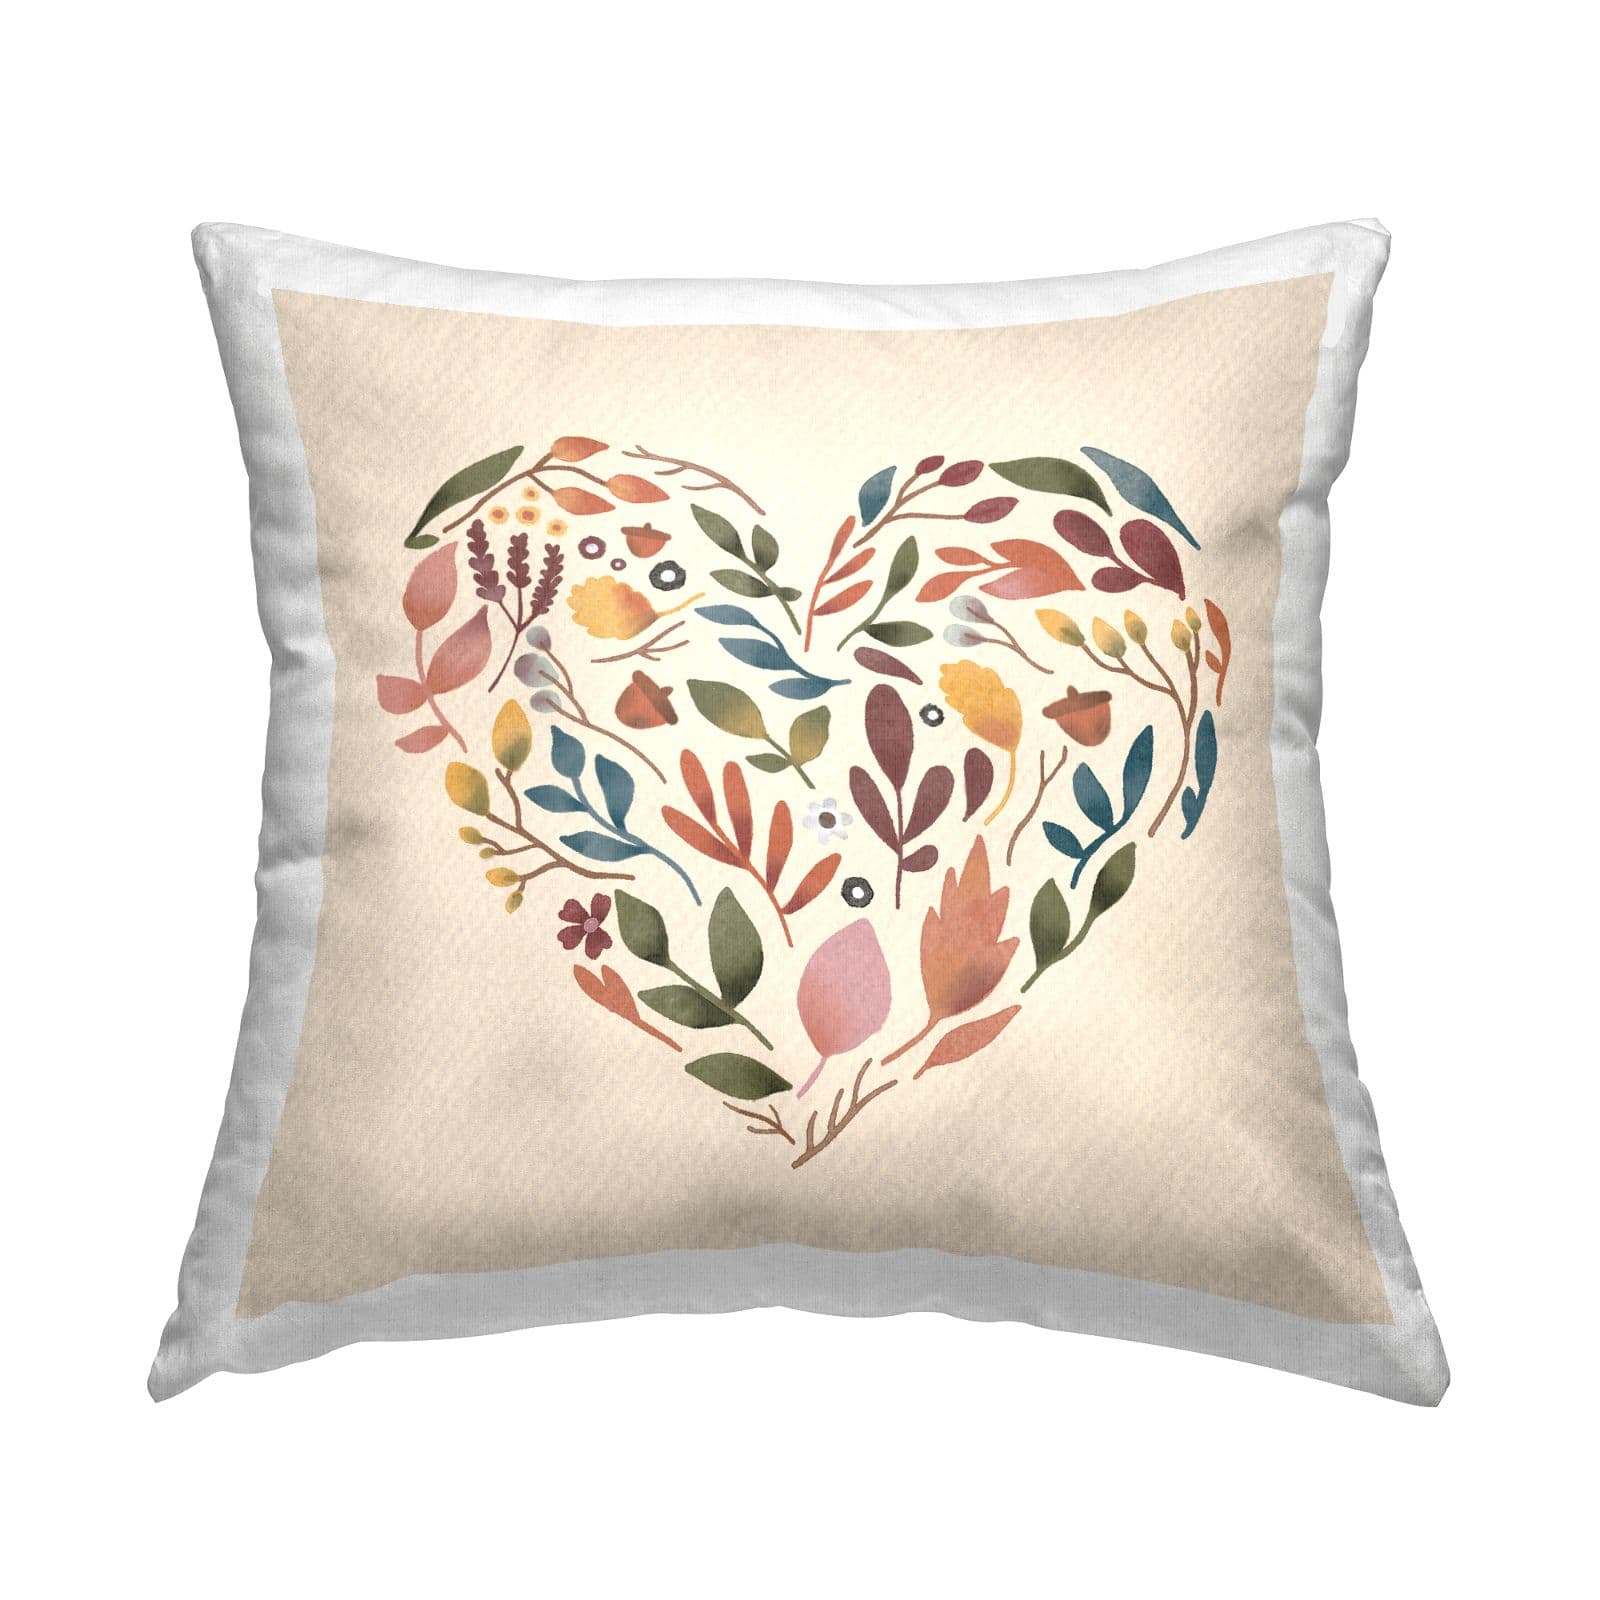 Stupell Industries Autumnal Botanicals Heart Shape Throw Pillow